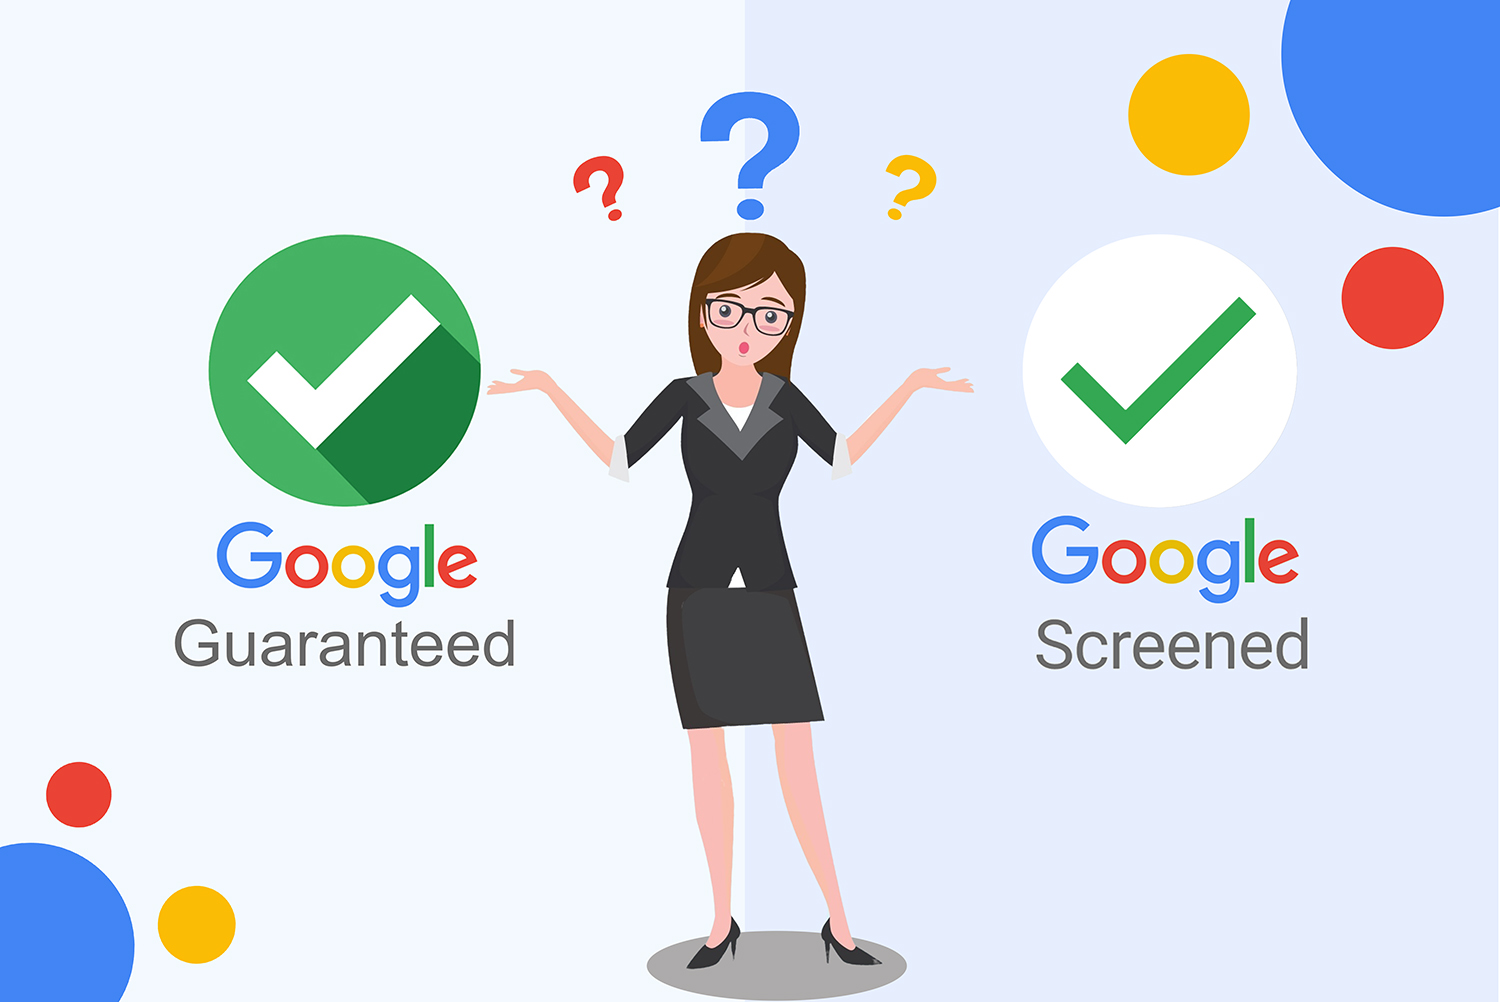 Google Guaranteed Vs Google Screened